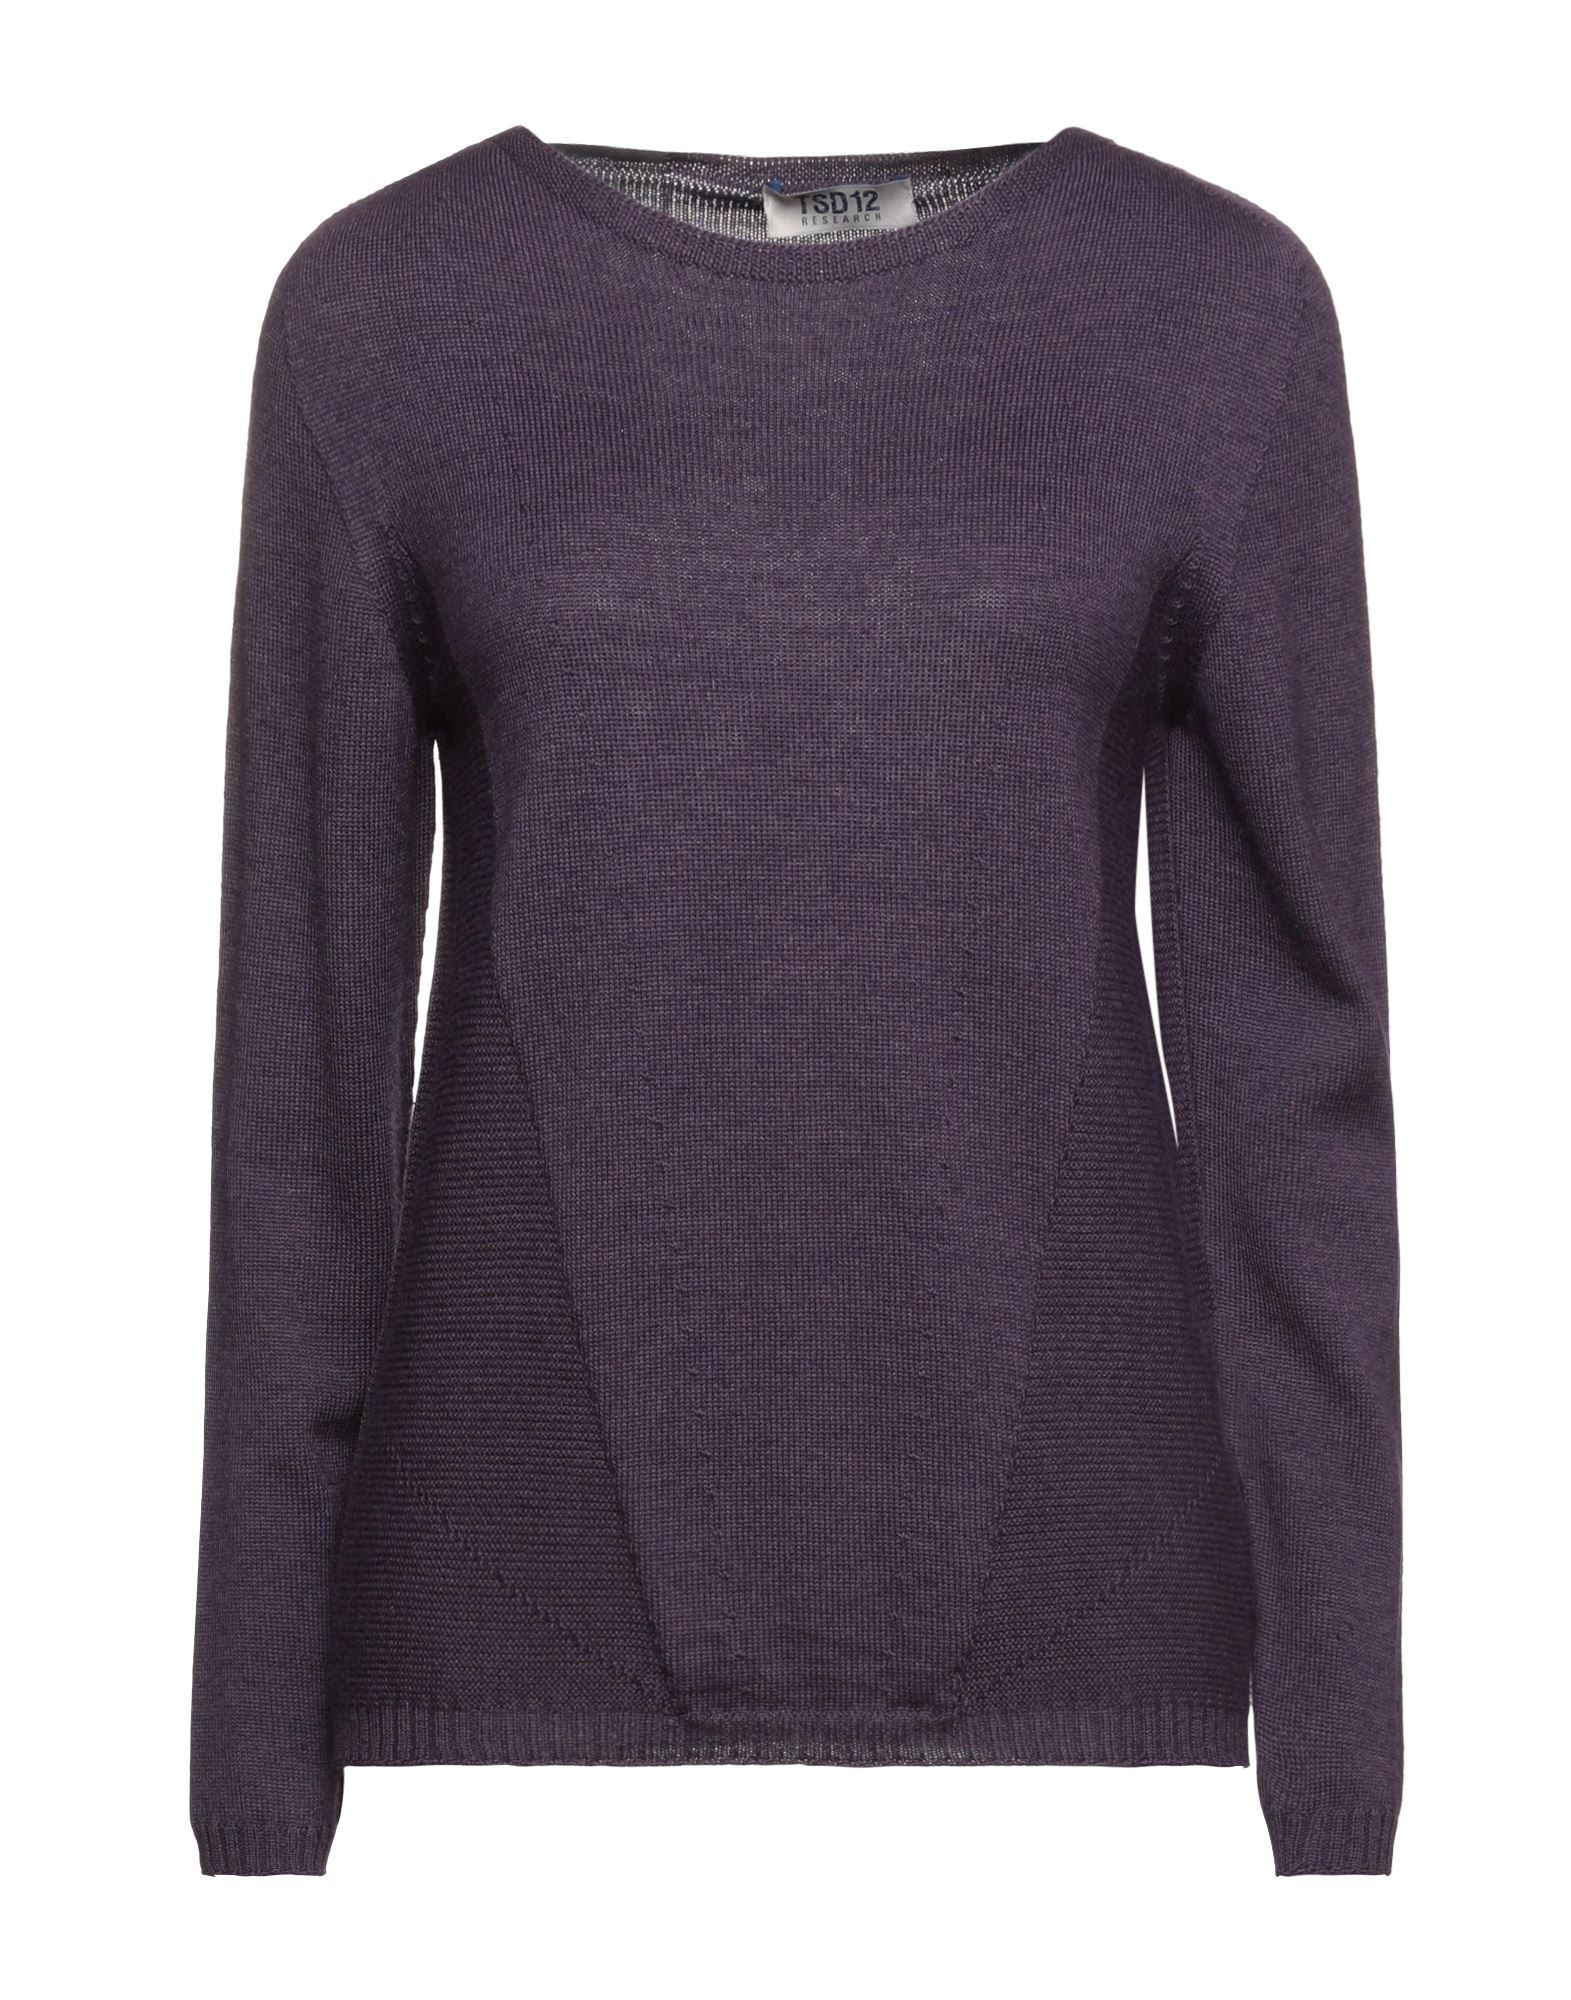 Tsd12 Sweaters In Purple